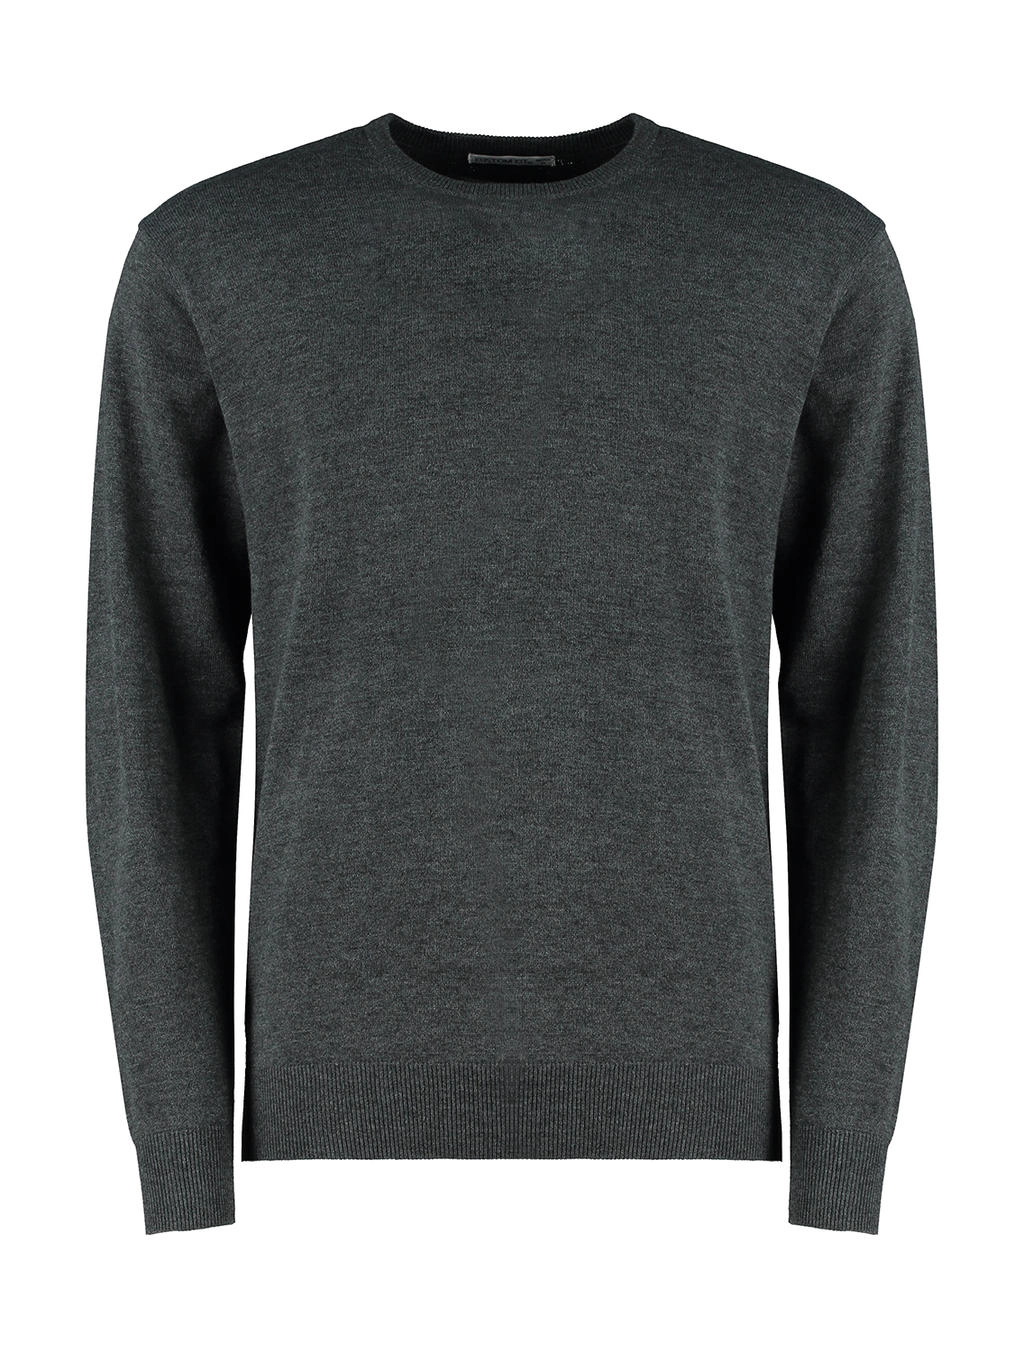 Regular Fit Arundel Crew Neck Sweater zum Besticken und Bedrucken in der Farbe Graphite mit Ihren Logo, Schriftzug oder Motiv.